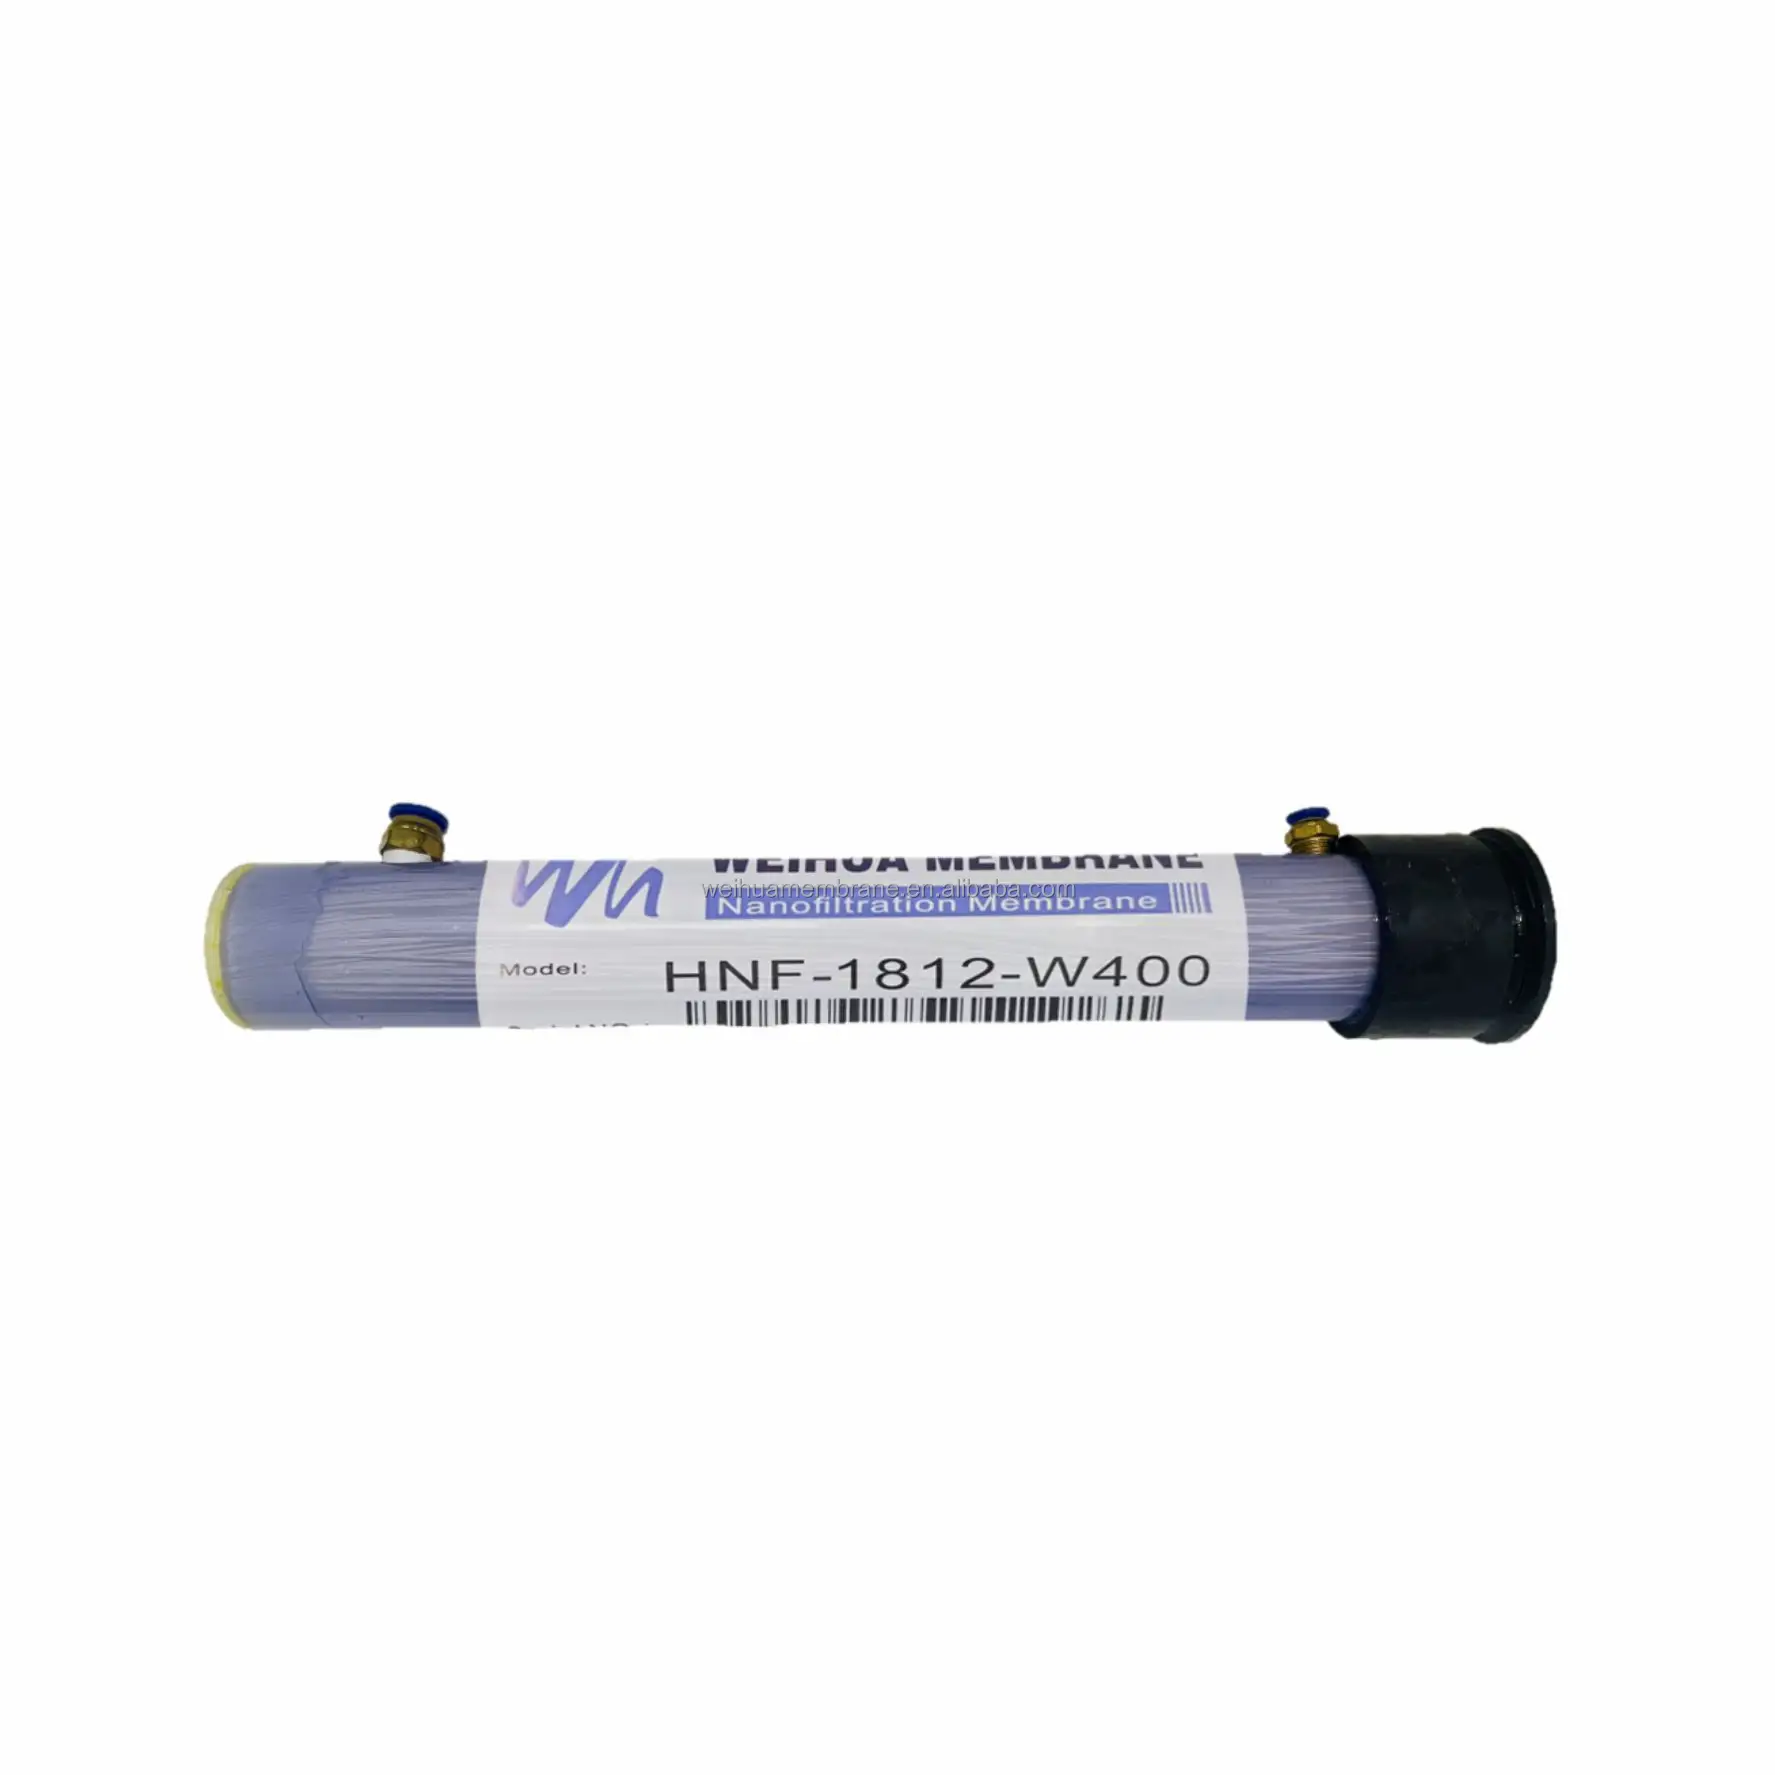 HNF-1812-W400 hohle Faser NF Membrane hochchlorresistente industrielle Desalination Wasseraufbereitung